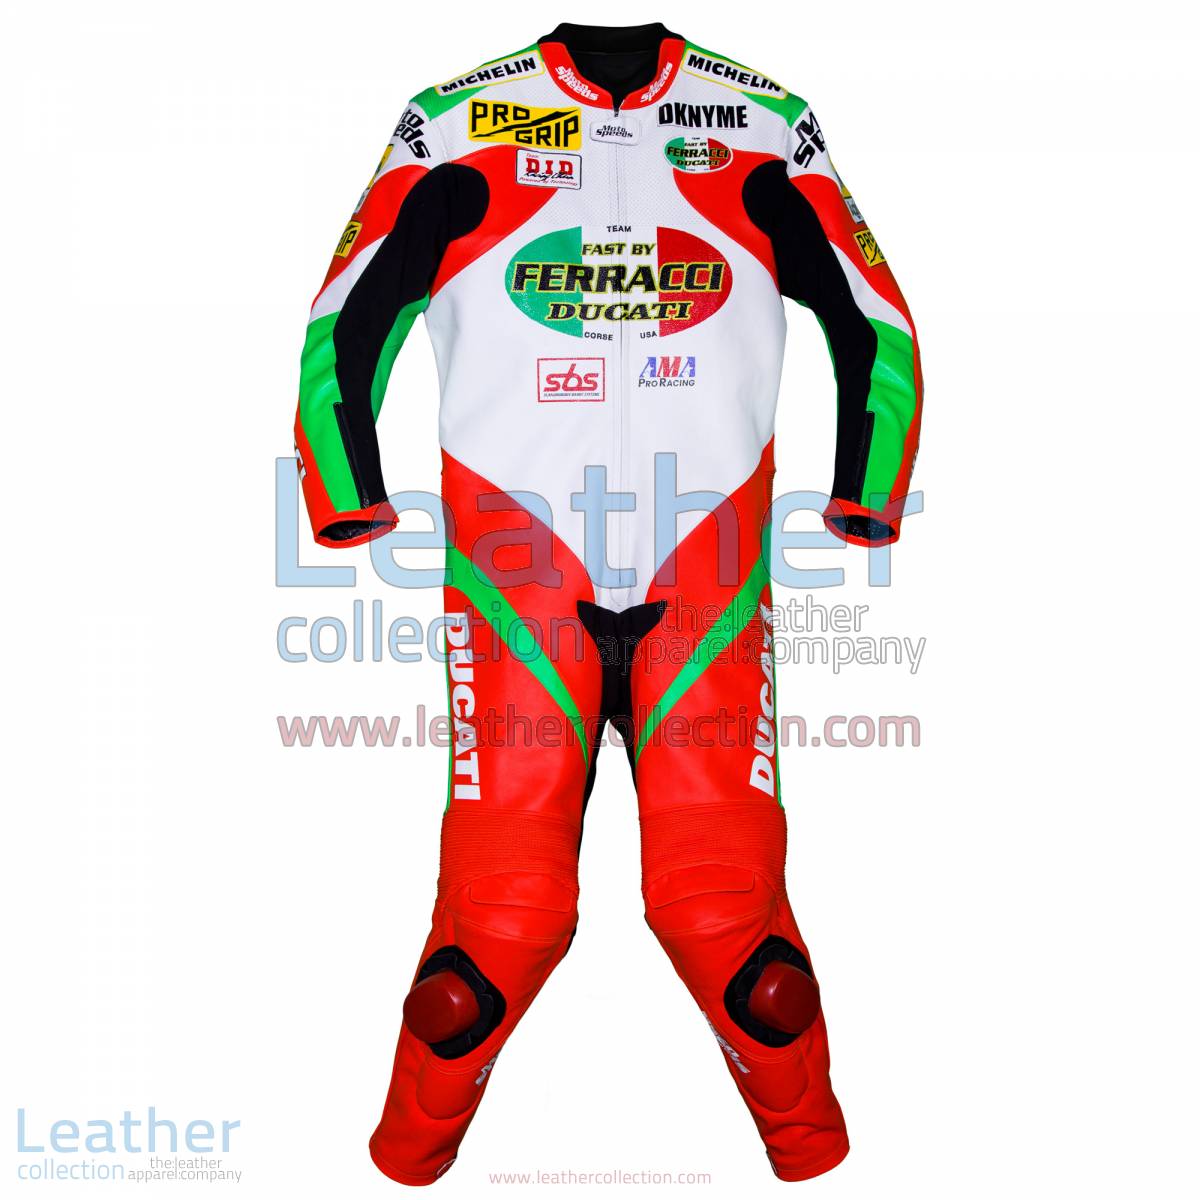 Mat Mladin Ducati AMA Race Suit